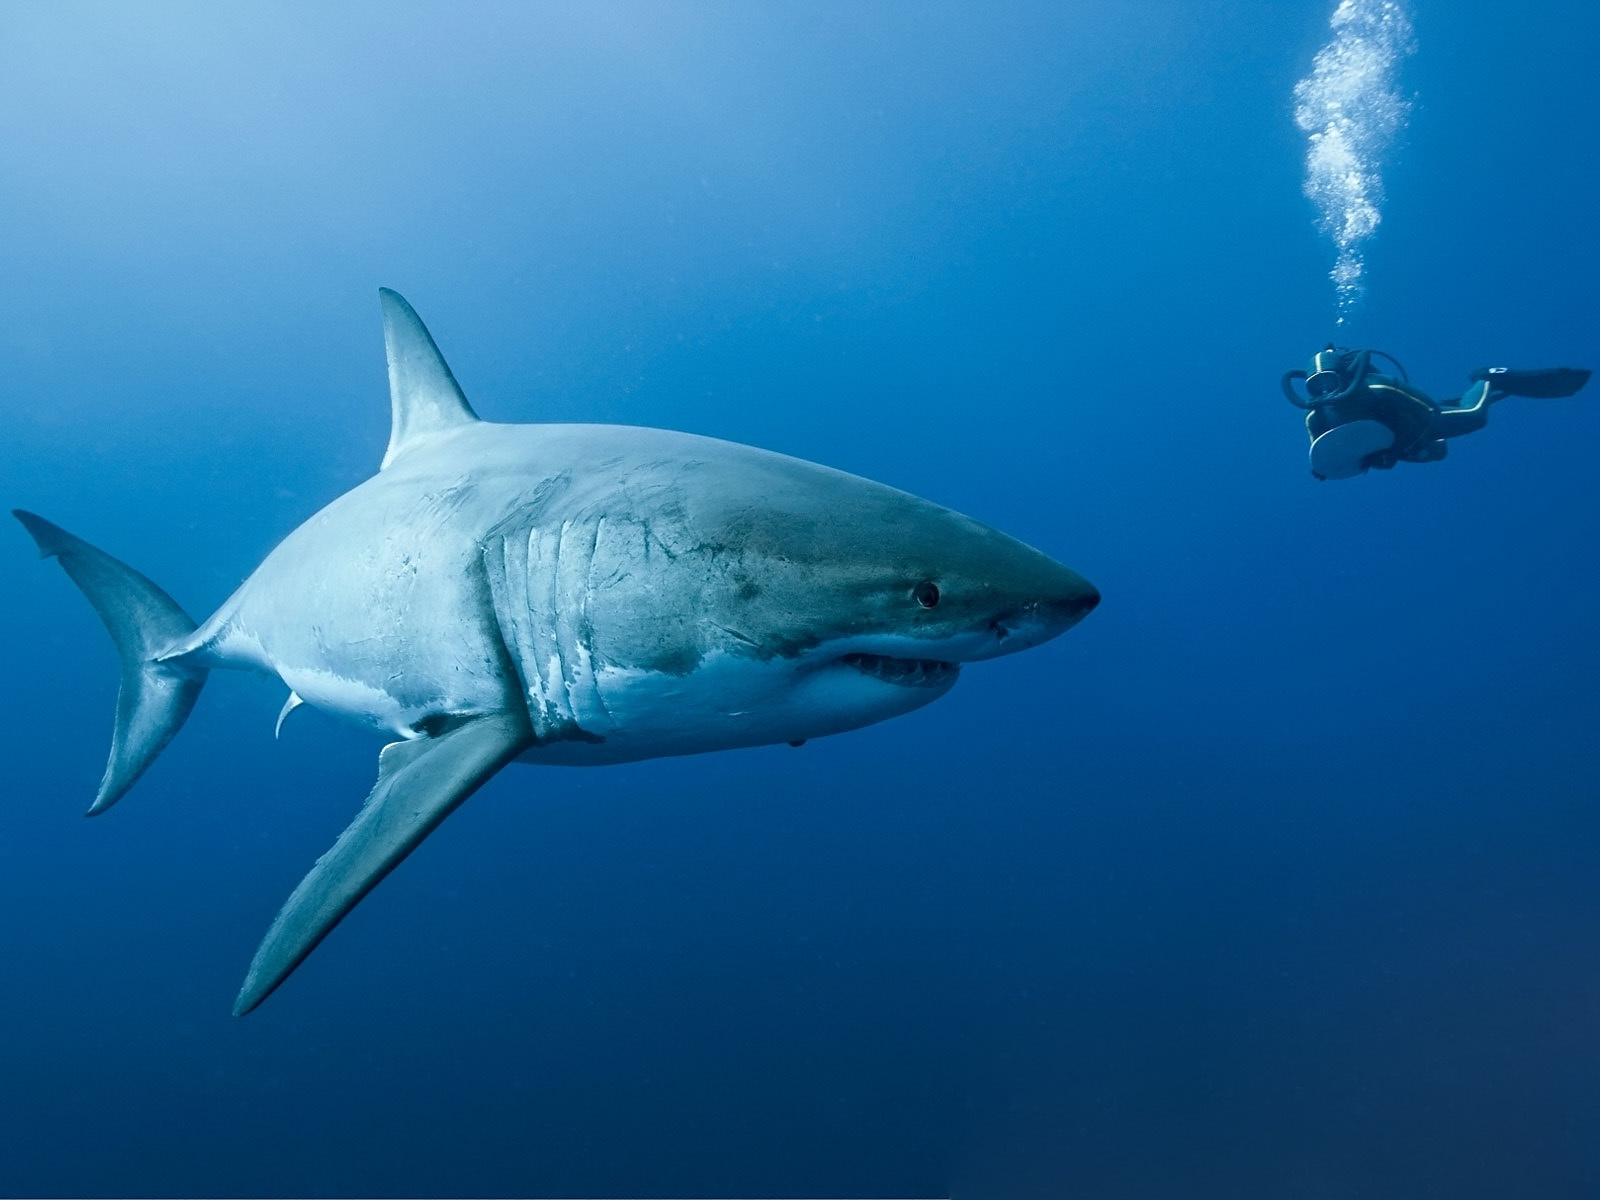 Wallpapers shark diver ocean on the desktop